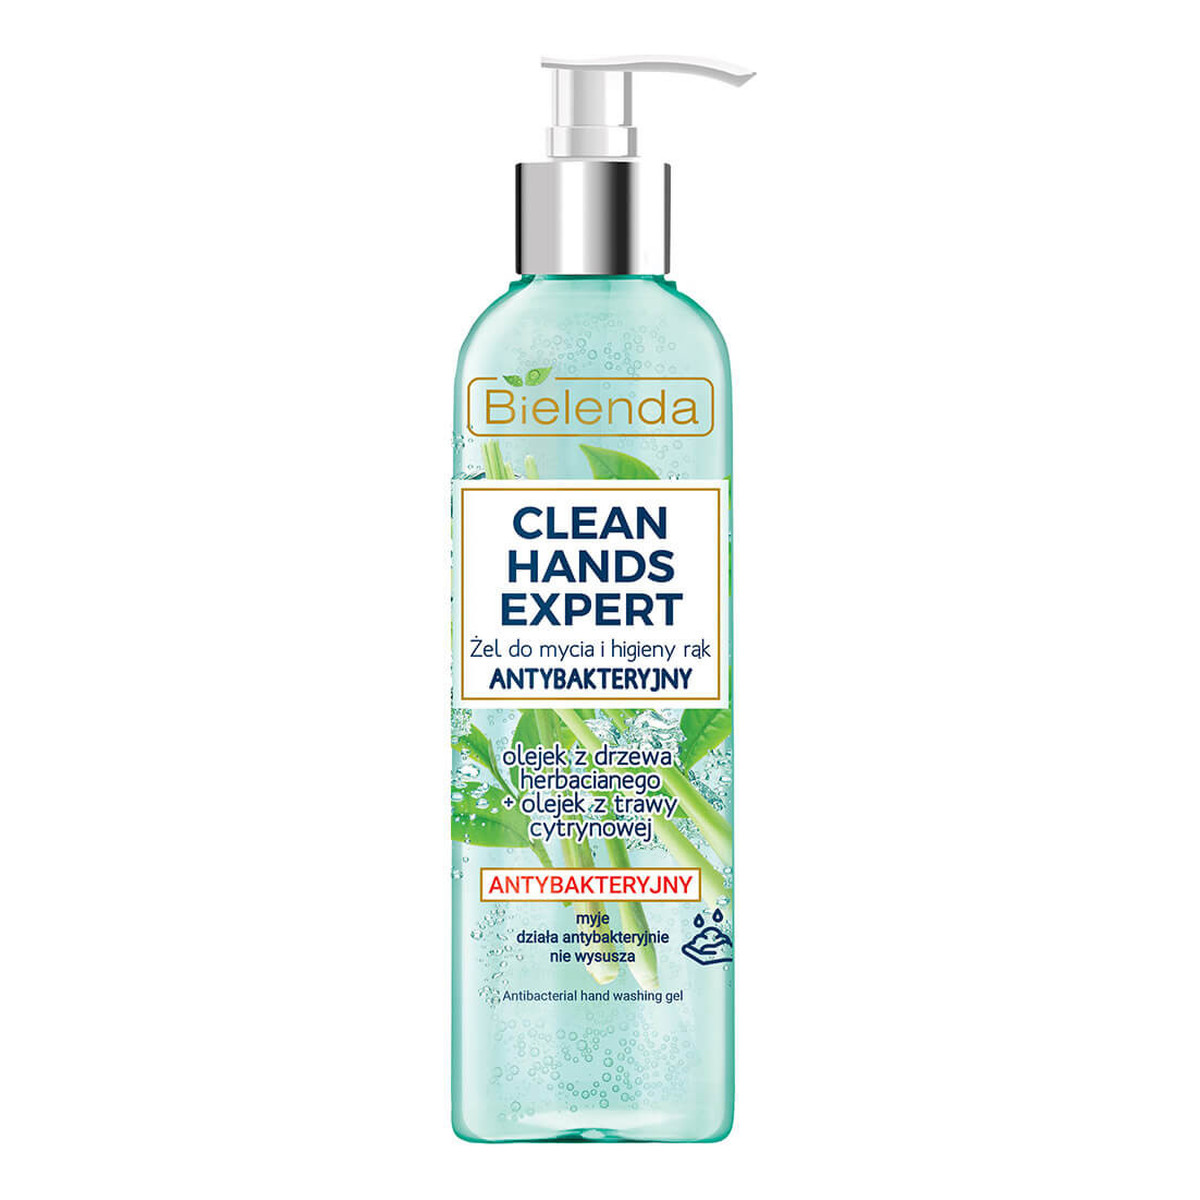 Bielenda Clean Hands Expert antybakteryjny żel do mycia i higieny rąk z pompką 200ml